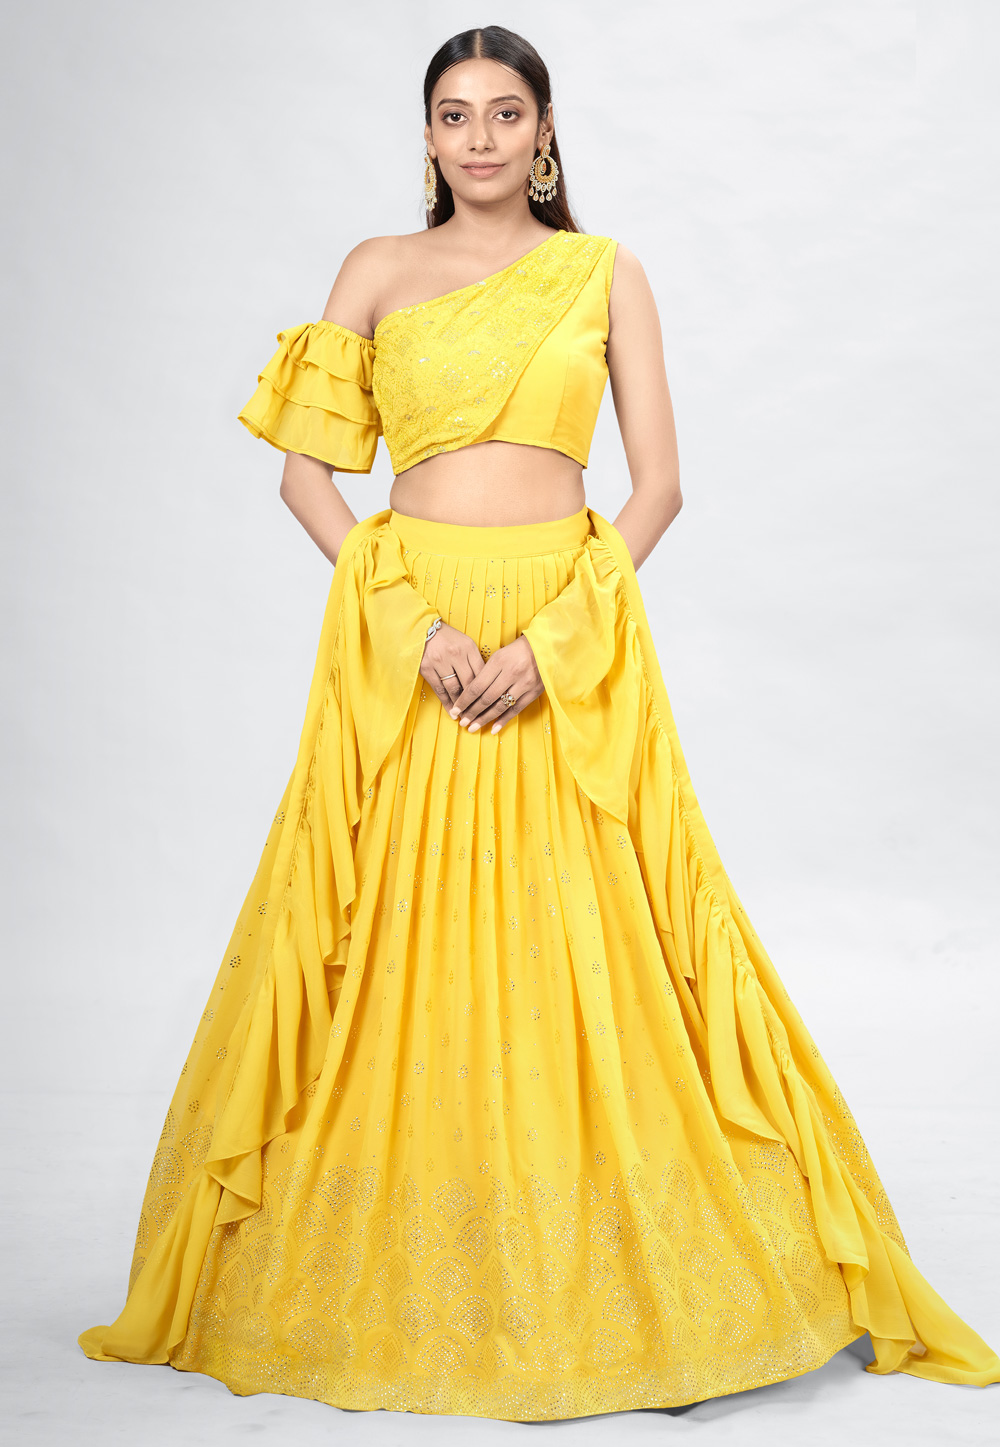 Trendy Yellow Lehenga Design For Haldi/Yellow Combination Lehenga/Stunning  Lehenga Choli - YouTube